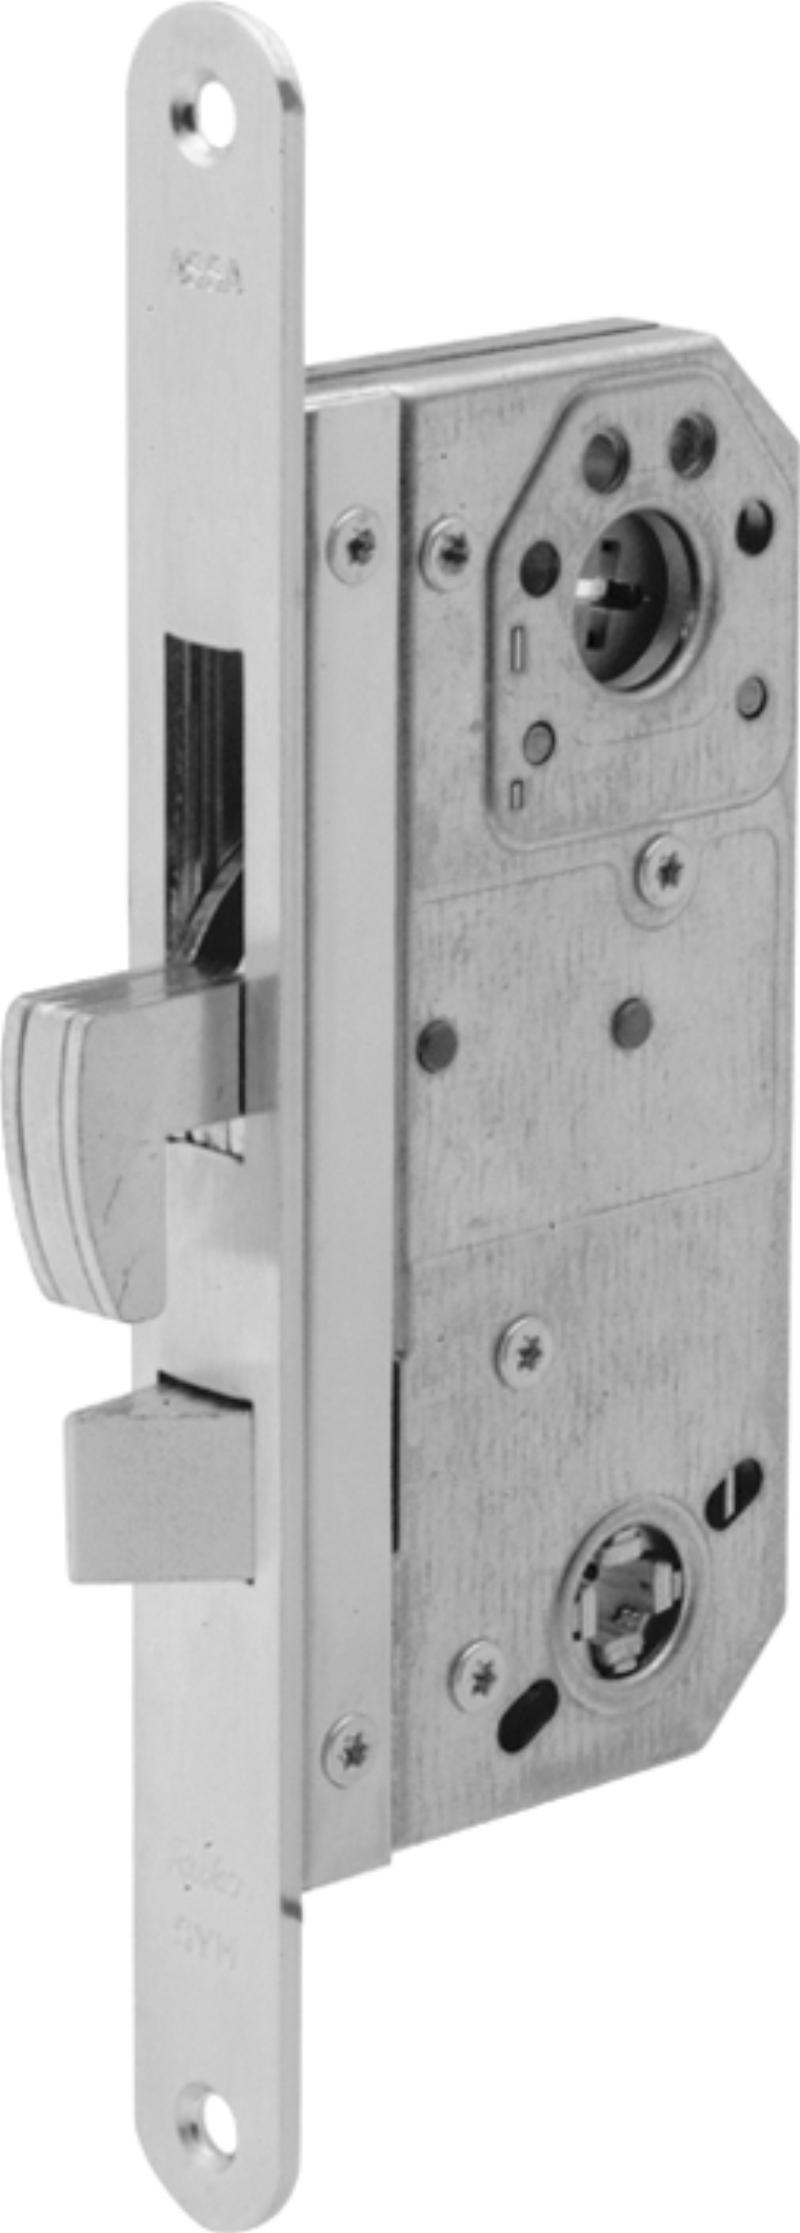 Assa lock box 7787h w/tin (920601)